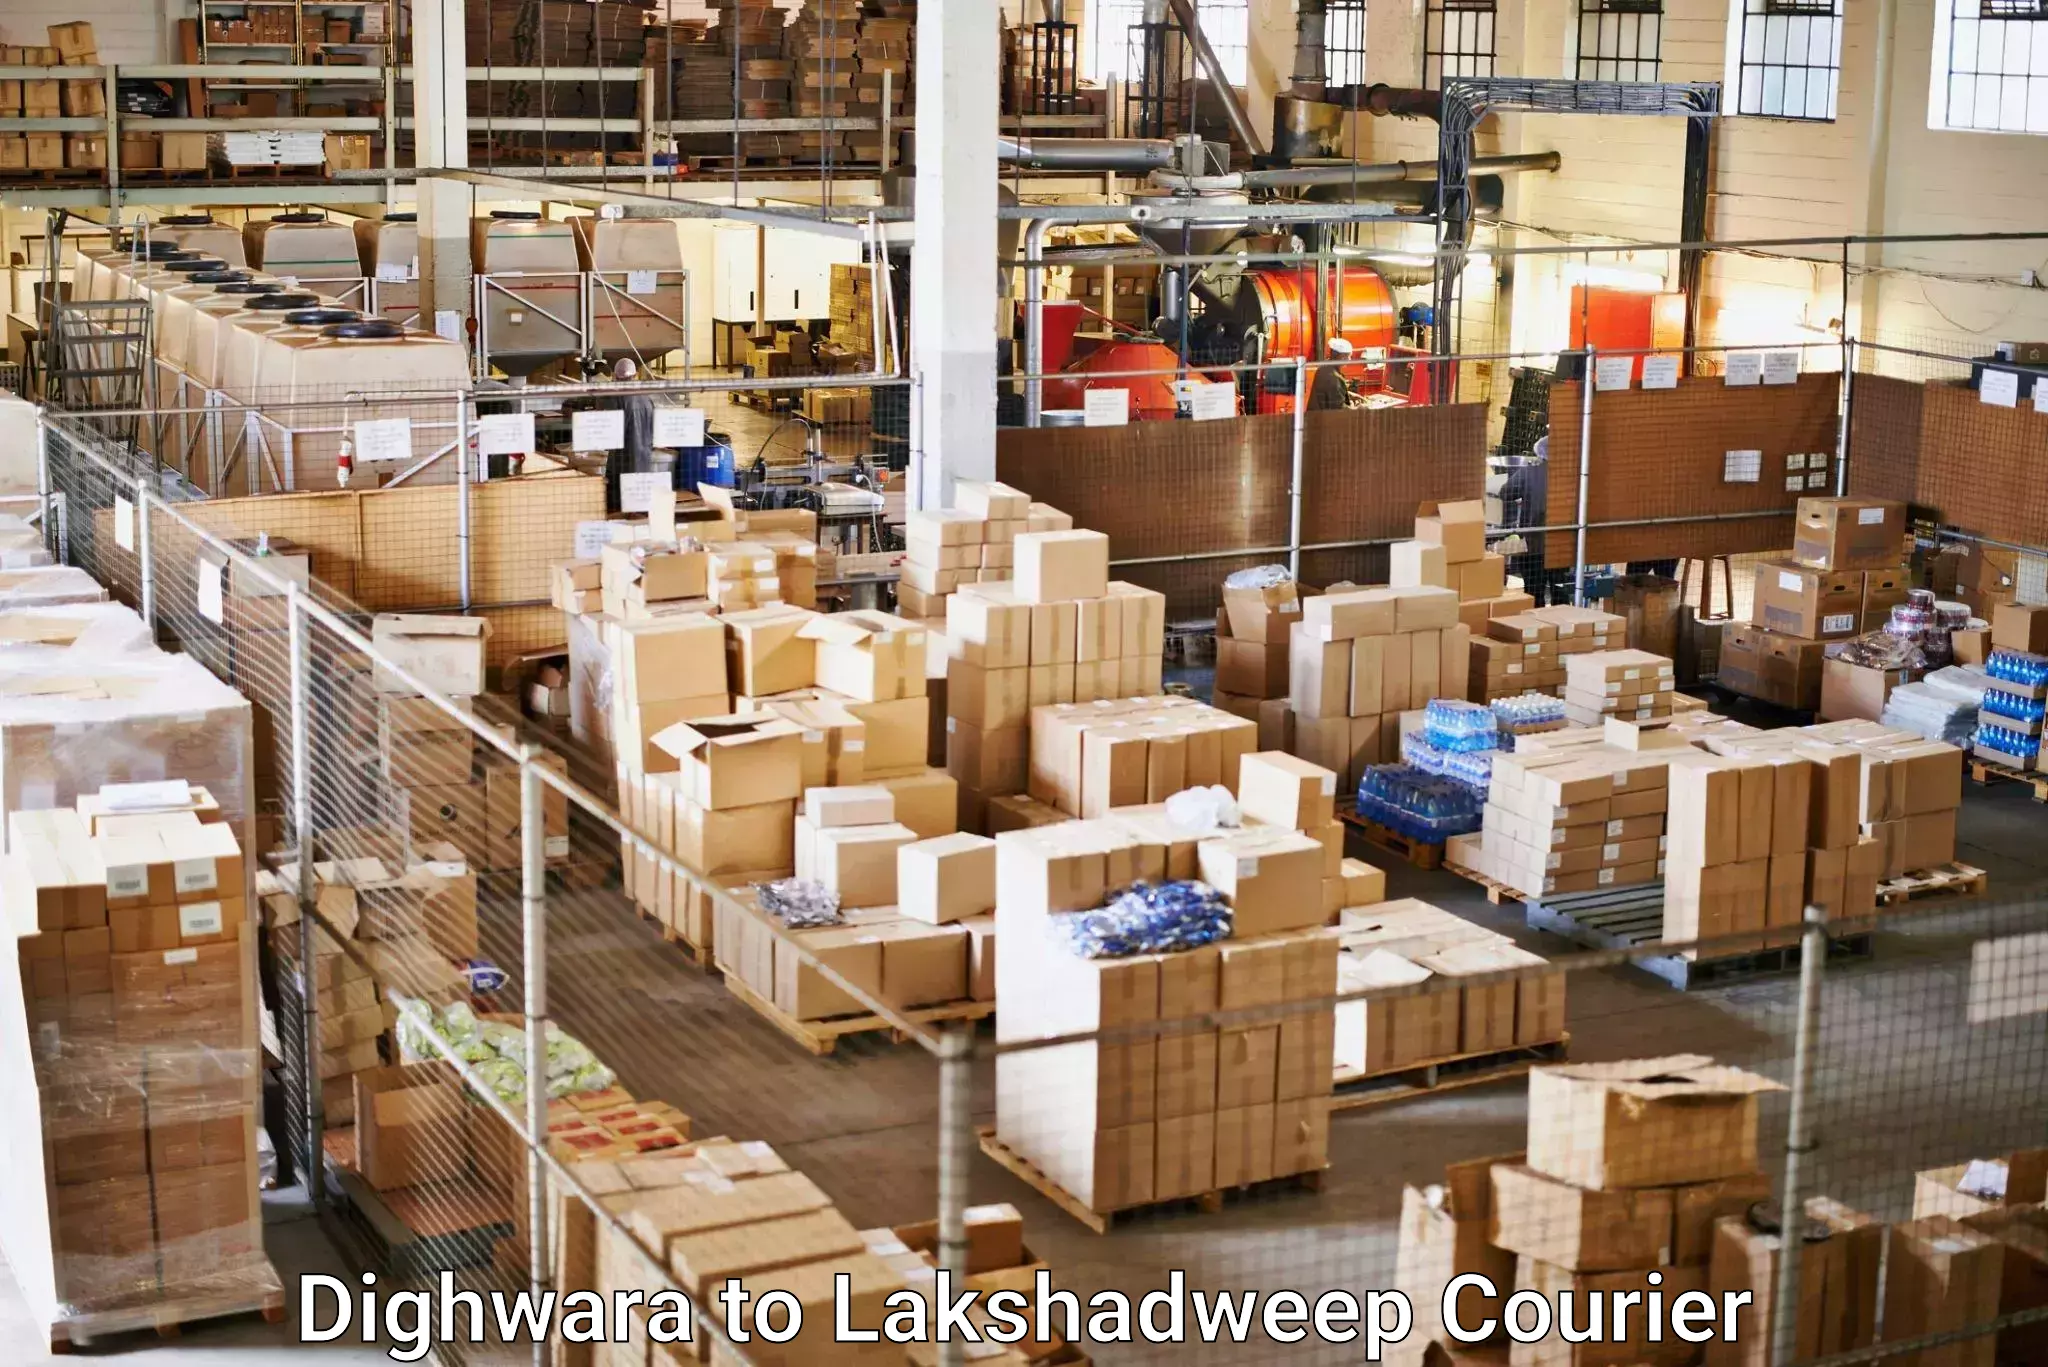 Nationwide delivery network Dighwara to Lakshadweep